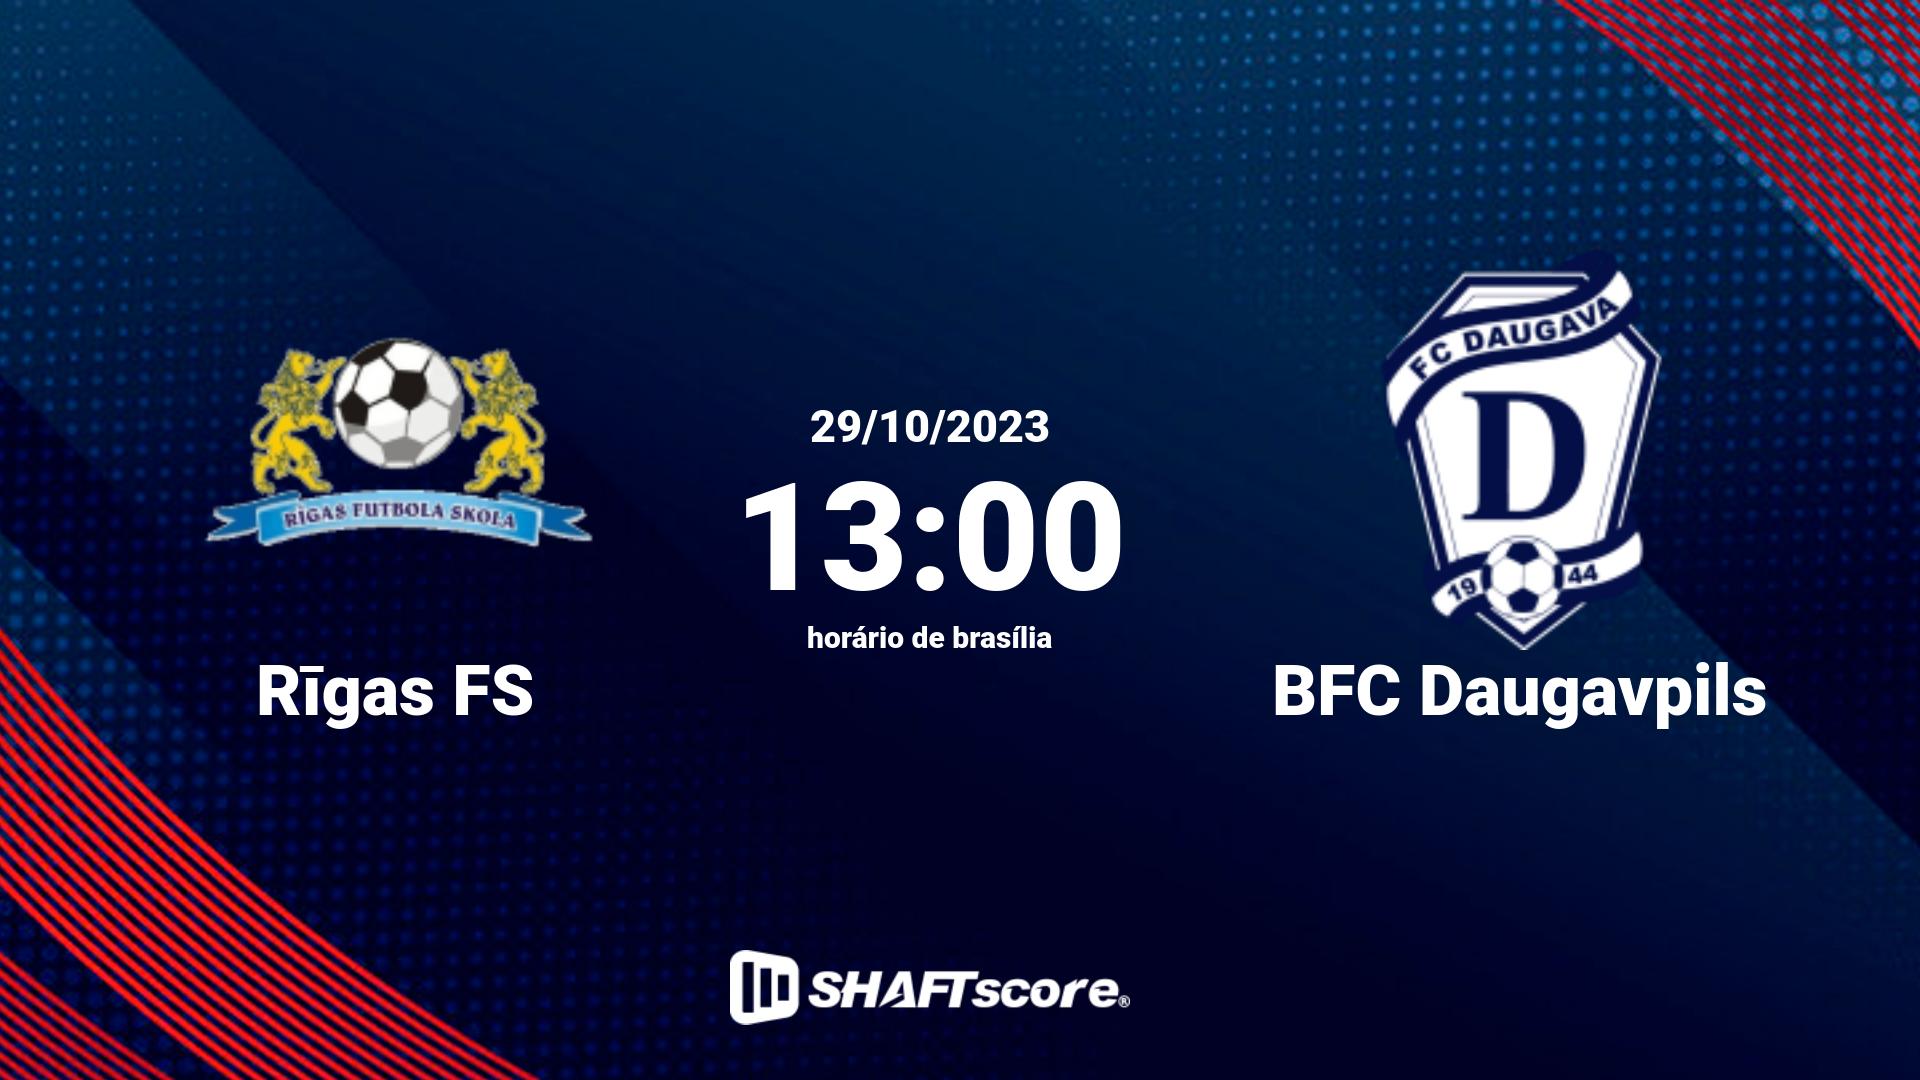 Estatísticas do jogo Rīgas FS vs BFC Daugavpils 29.10 13:00